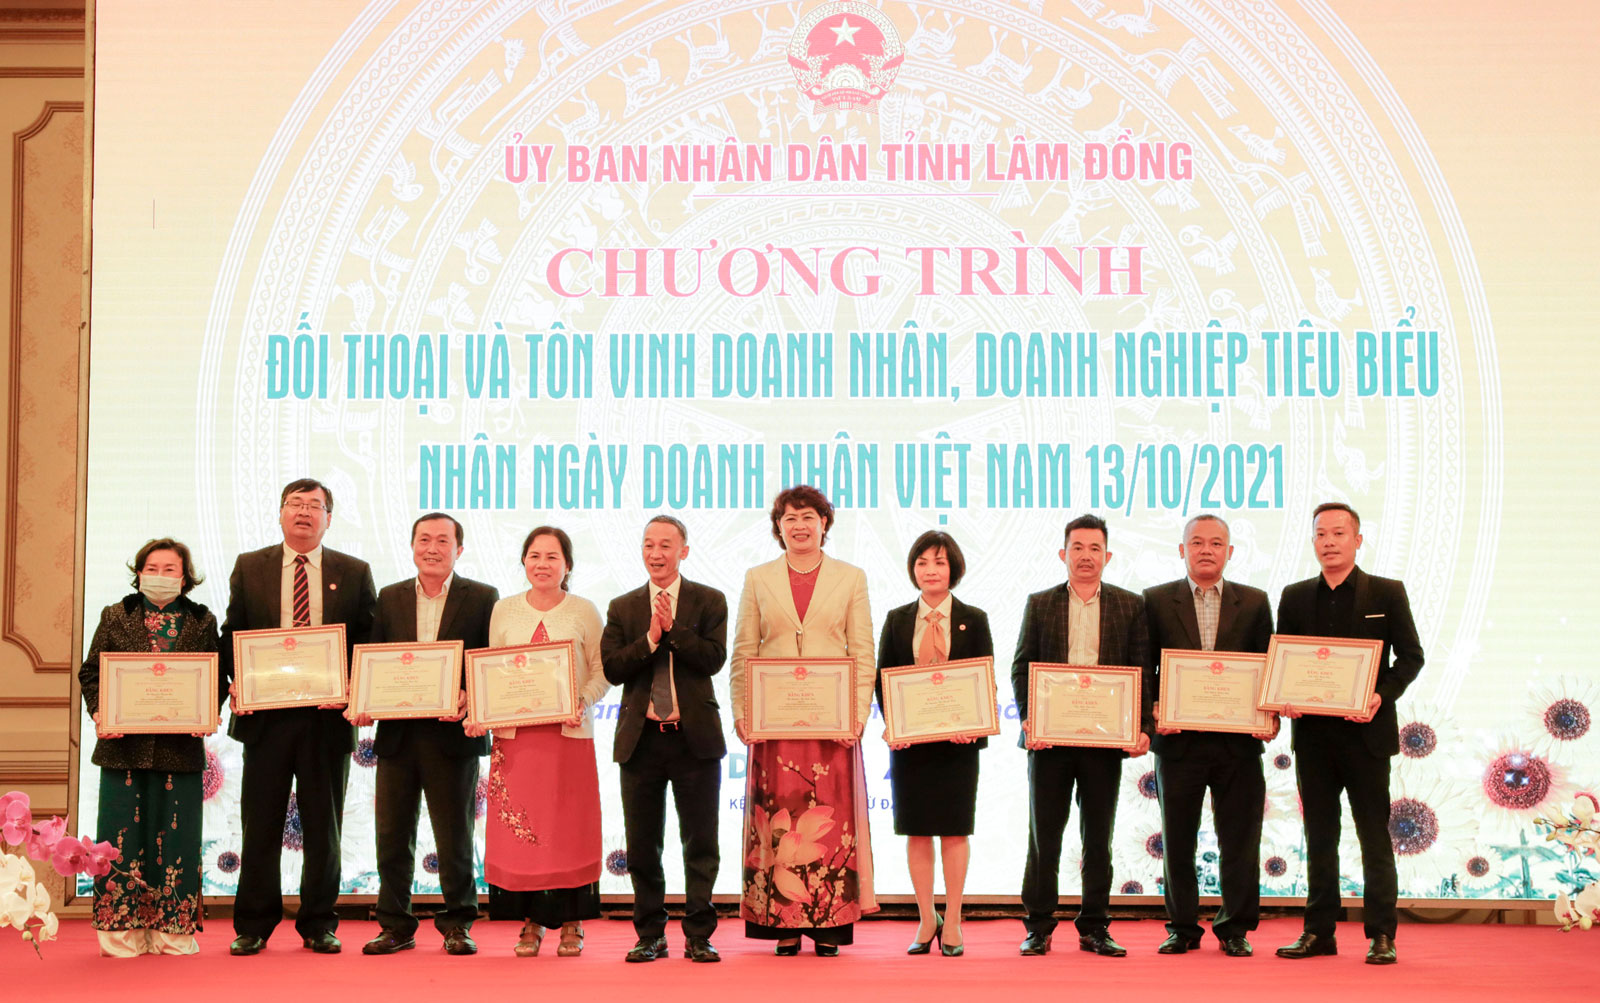 Chị Huệ (giữa) cùng các doanh nhân tiêu biểu nhận Bằng khen của Chủ tịch UBND tỉnh Lâm Đồng nhân ngày Doanh nhân Việt Nam